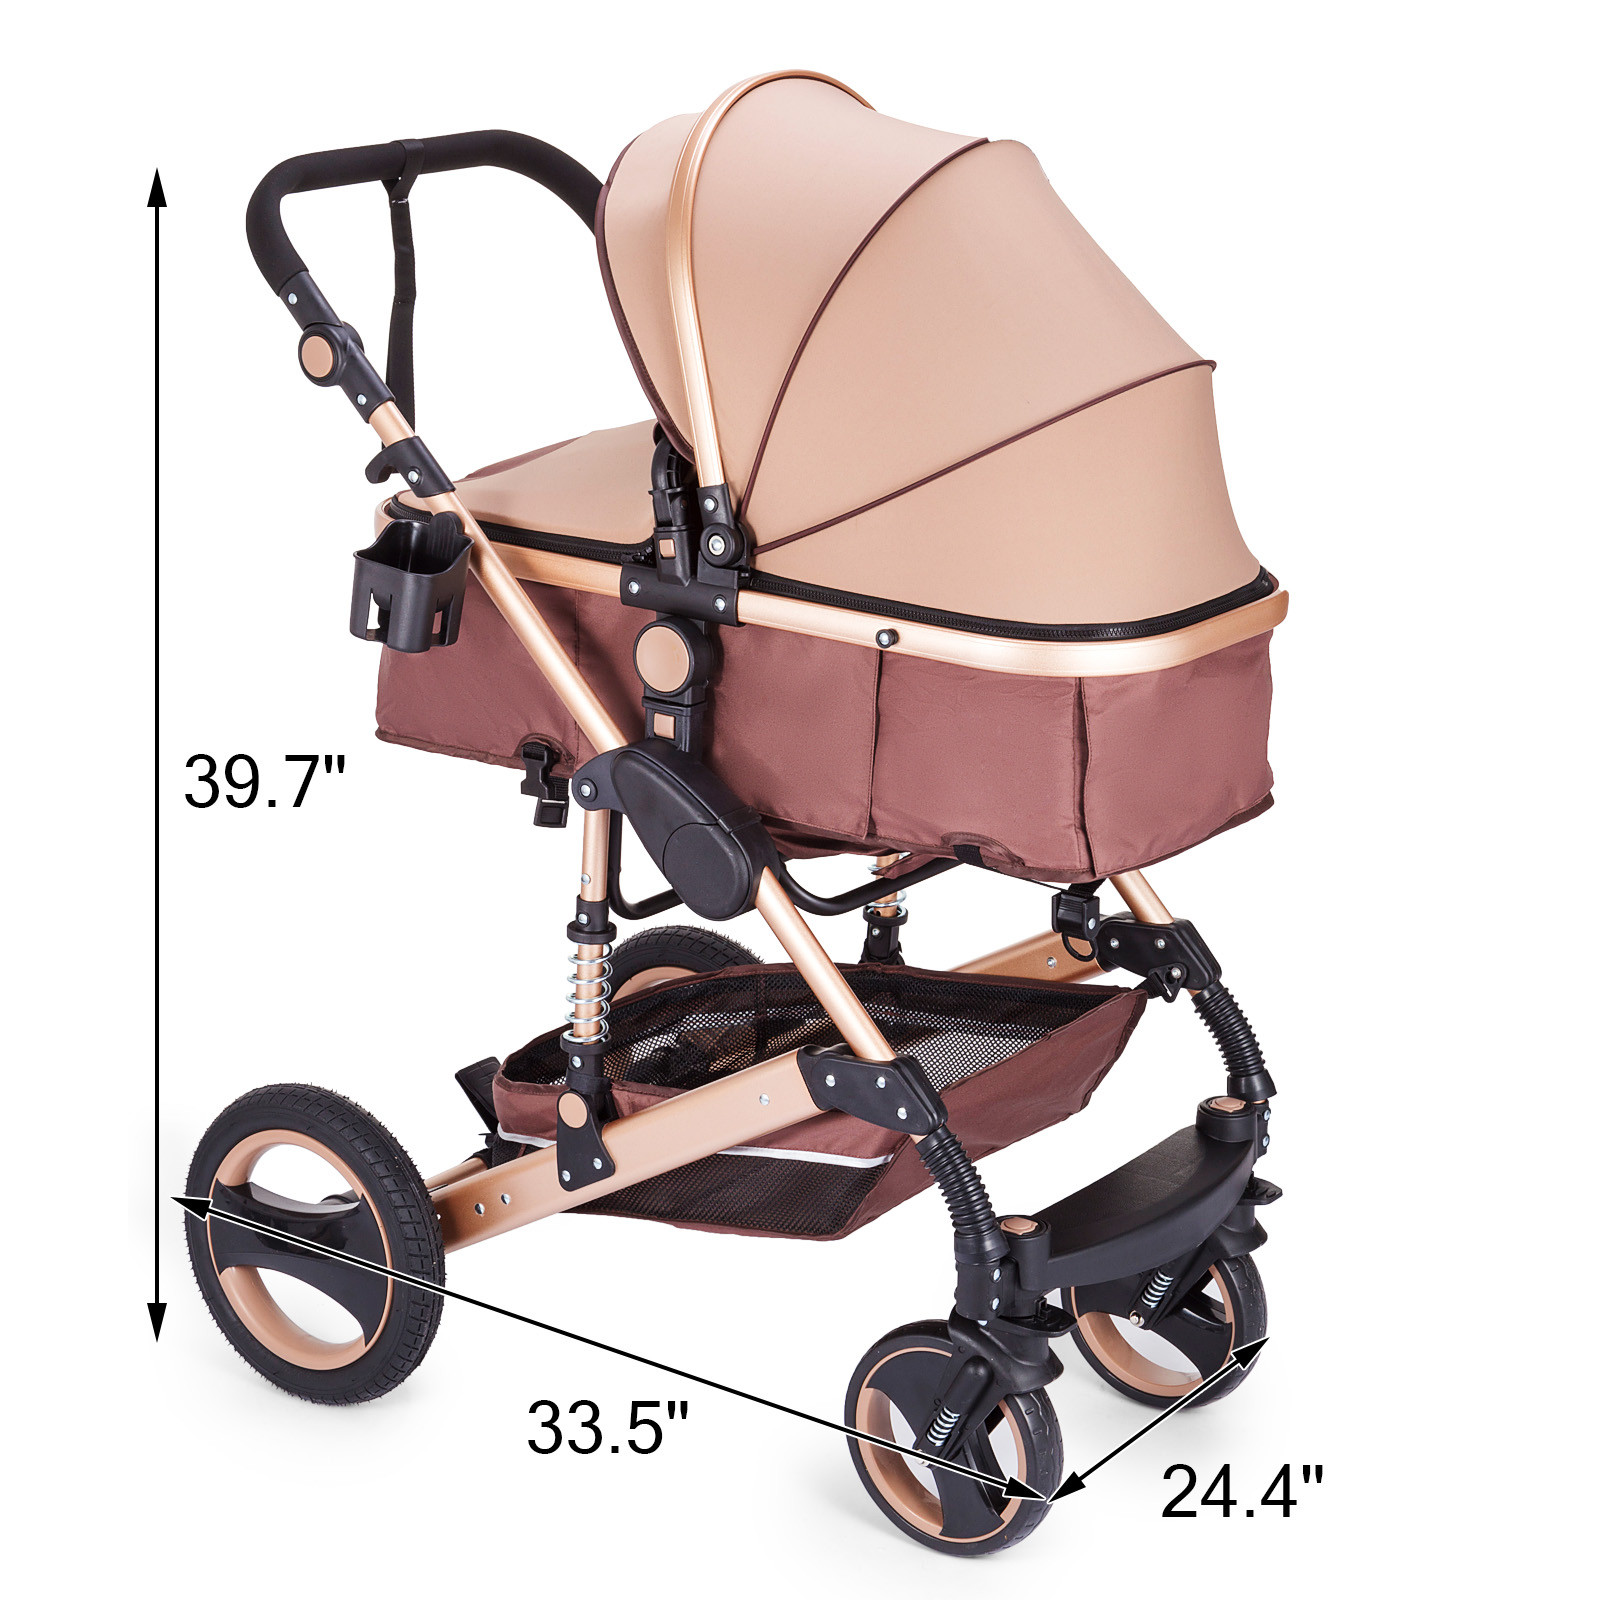 Black Carrito de Bebé 3 en 1,Carrito Bebé,Silla de Paseo que incluye asiento de bebé con cubrepiés,silla de paseo y accesorios,estructura de aluminio 